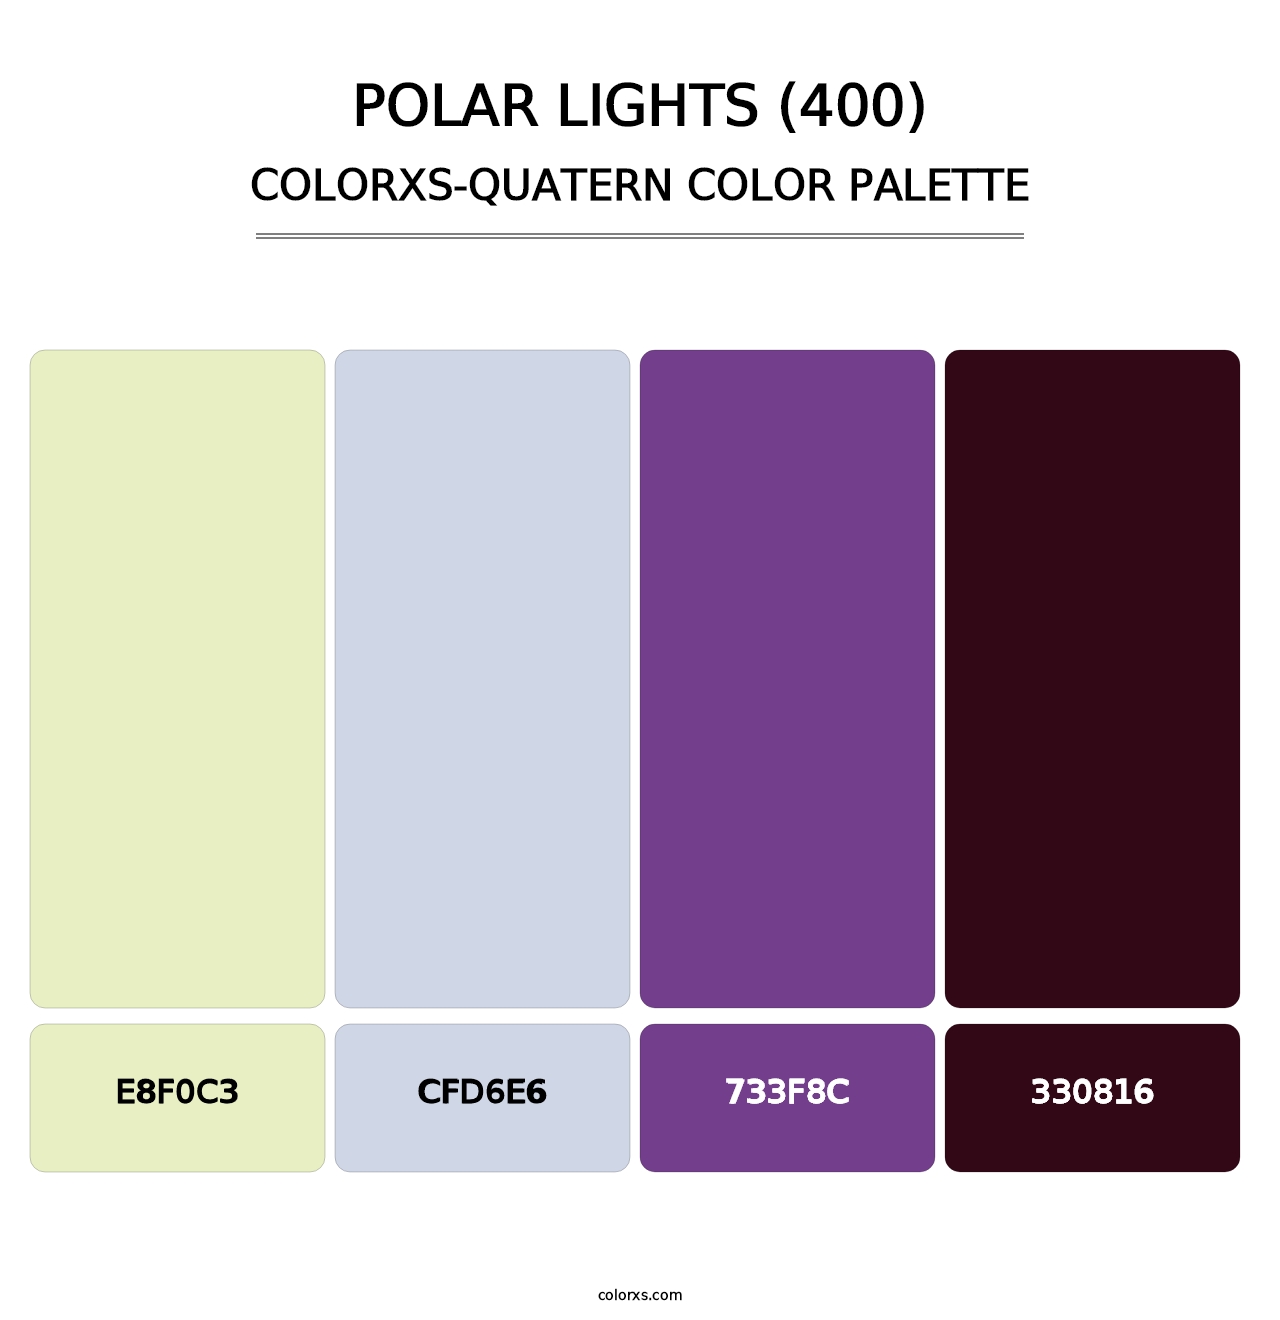 Polar Lights (400) - Colorxs Quatern Palette